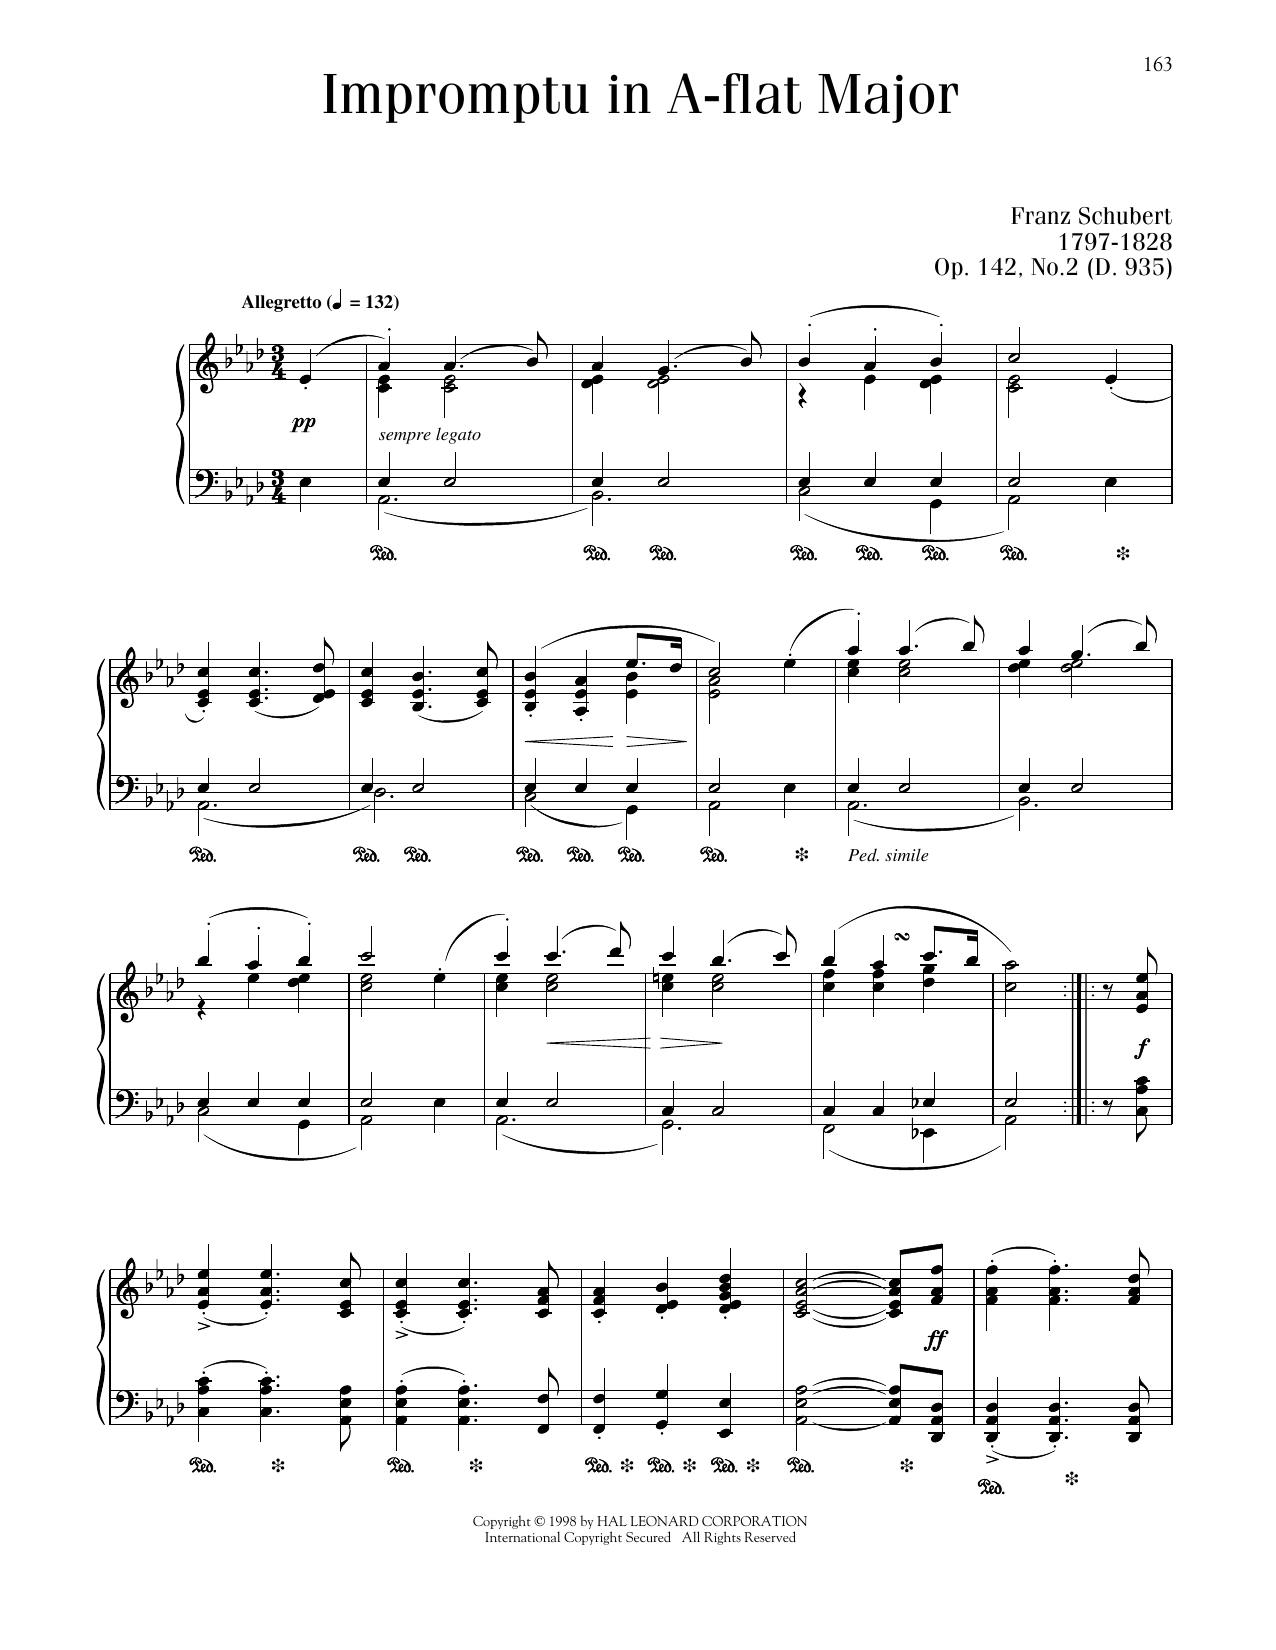 Franz Schubert Impromptu In A-flat Major, Op. 142, No. 2 sheet music notes printable PDF score